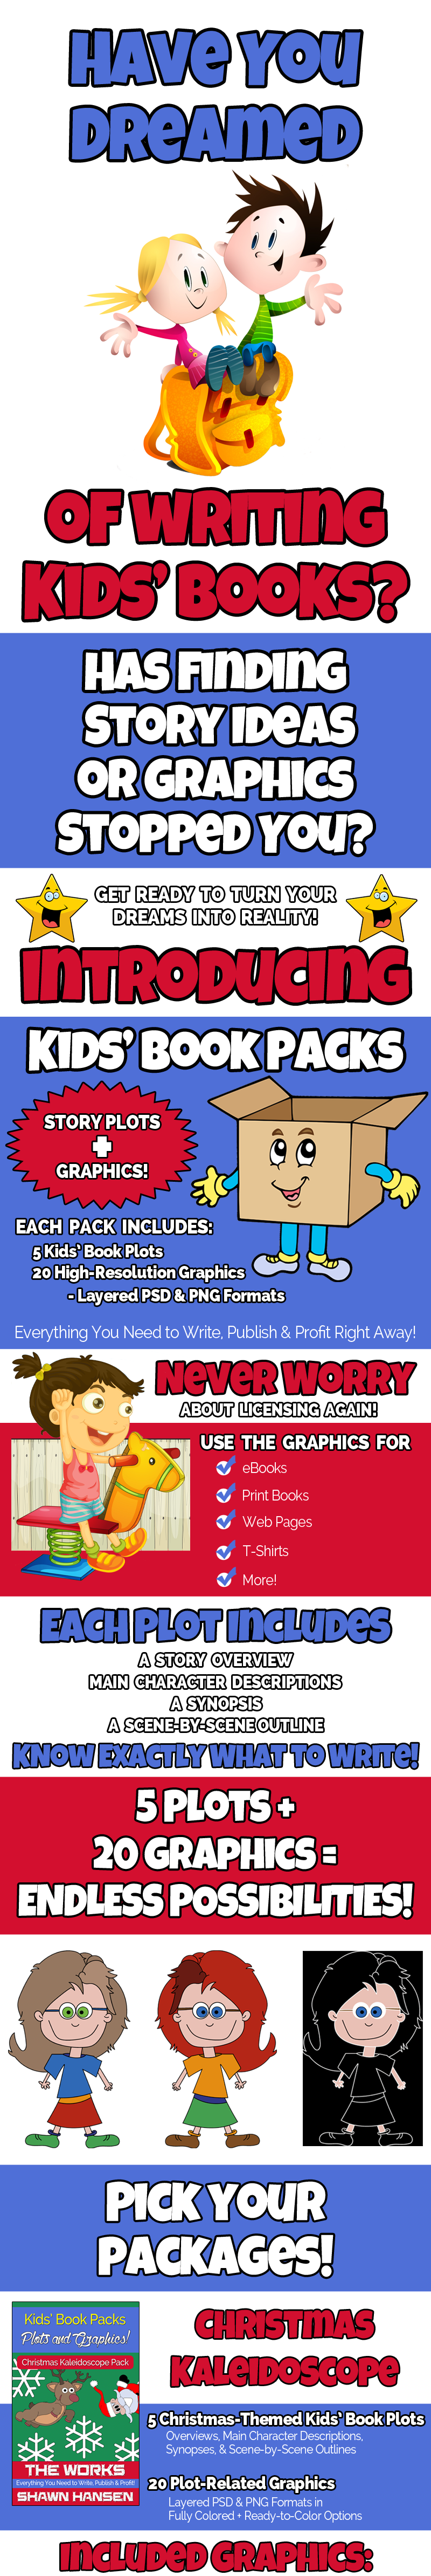 KidsBookPacks_SalesPage_Top